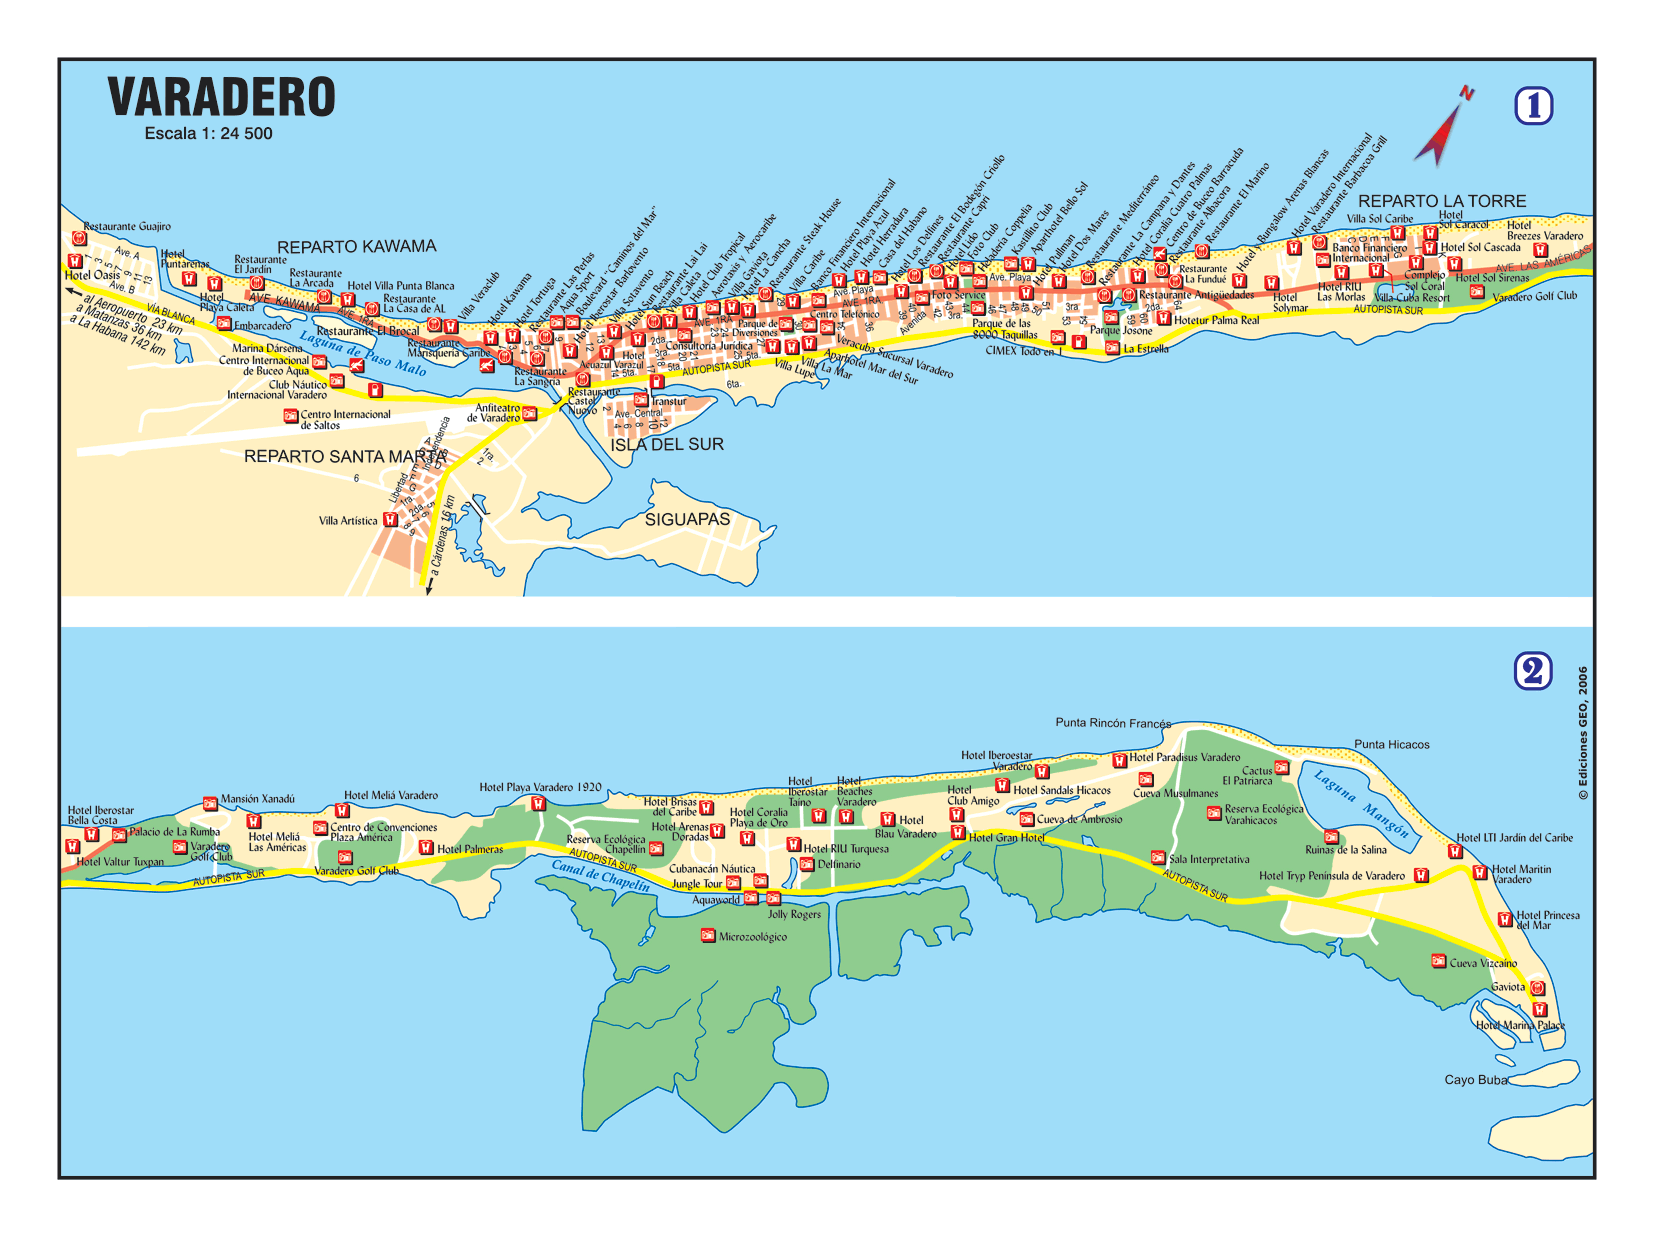 Melhores Hotéis em Varadero Cuba - Lista e Mapa